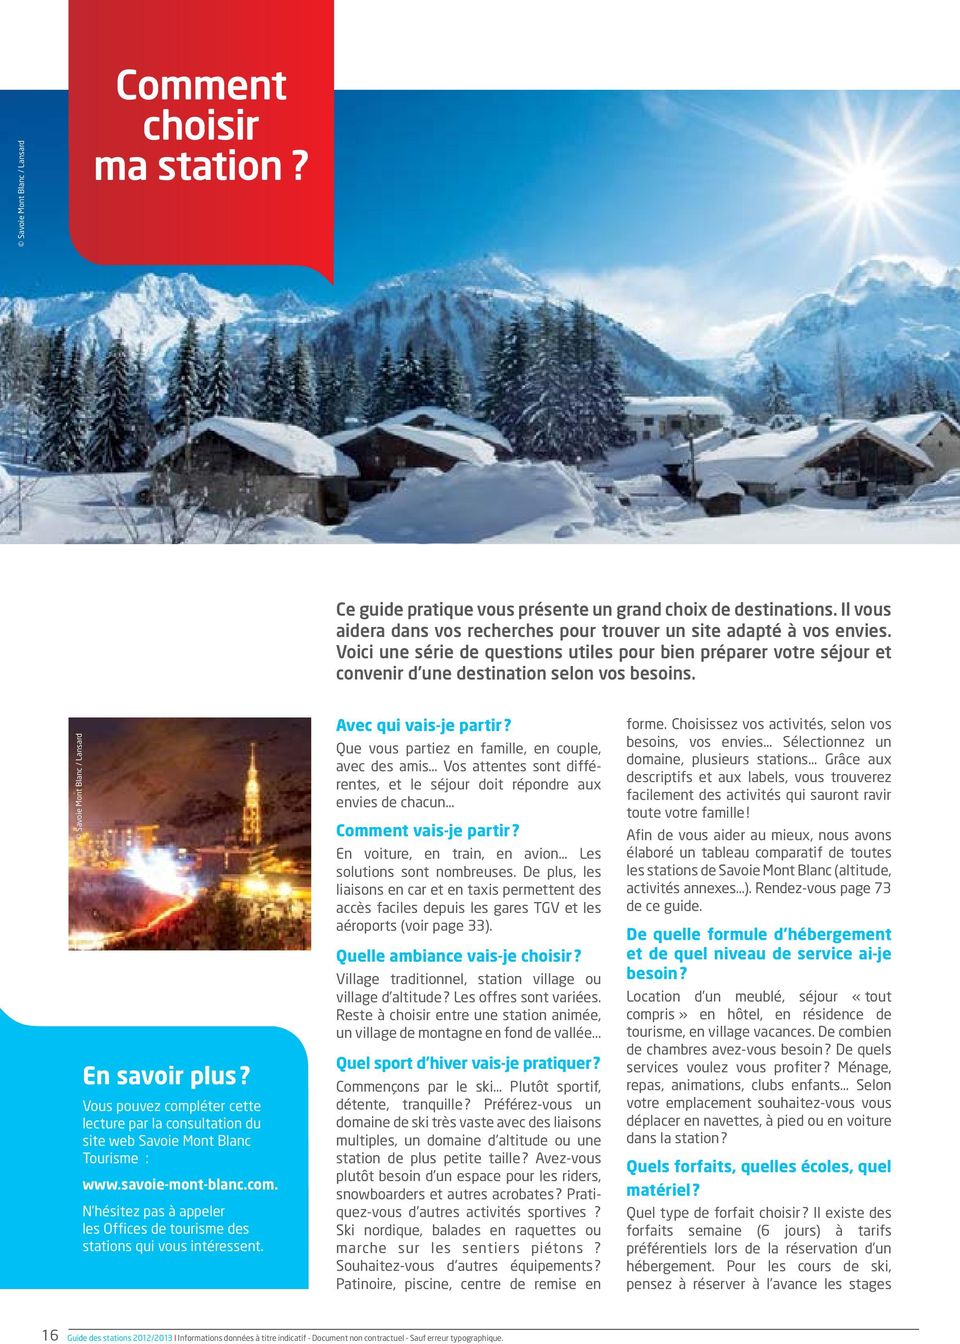 Vous pouvez compléter cette lecture par la consultation du site web Savoie Mont Blanc Tourisme : www.savoie-mont-blanc.com. N hésitez pas à appeler les Offices de tourisme des stations qui vous intéressent.